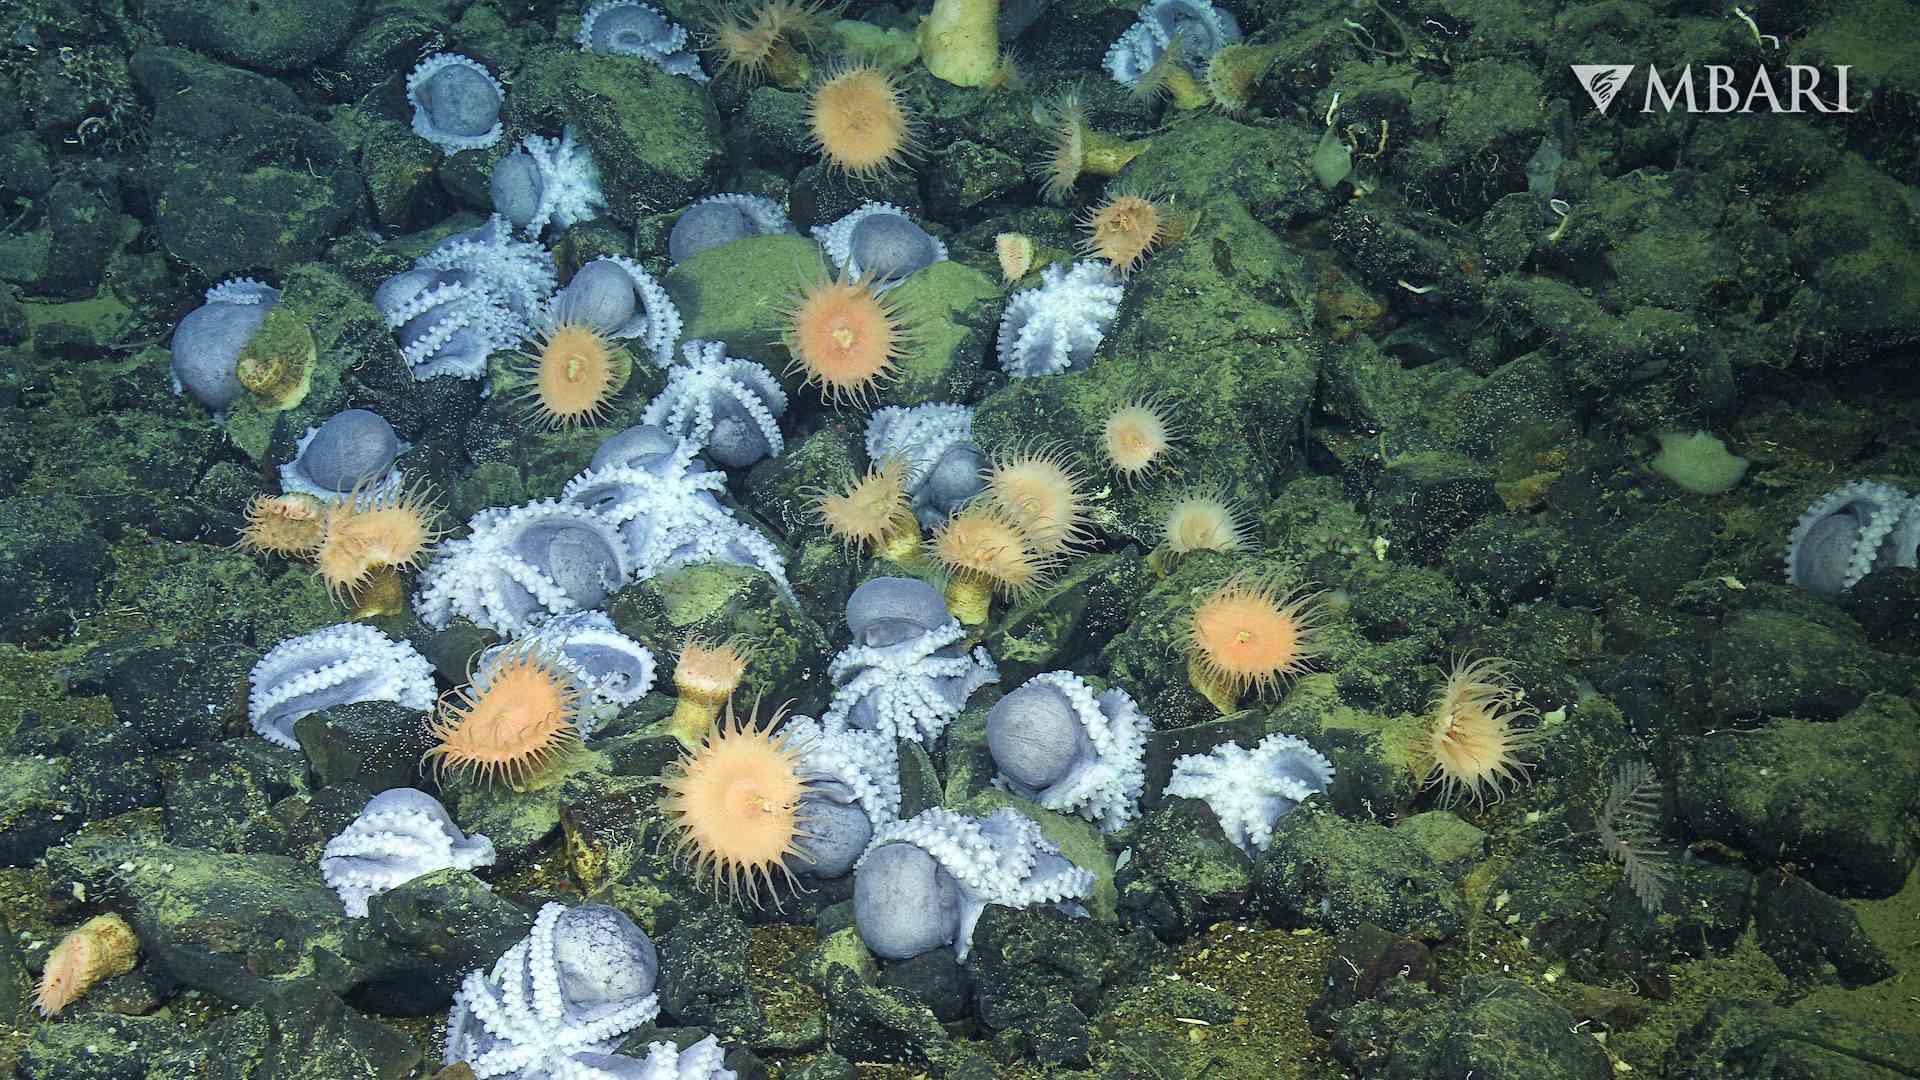 Octopus Garden is a deep-sea egg accelerator